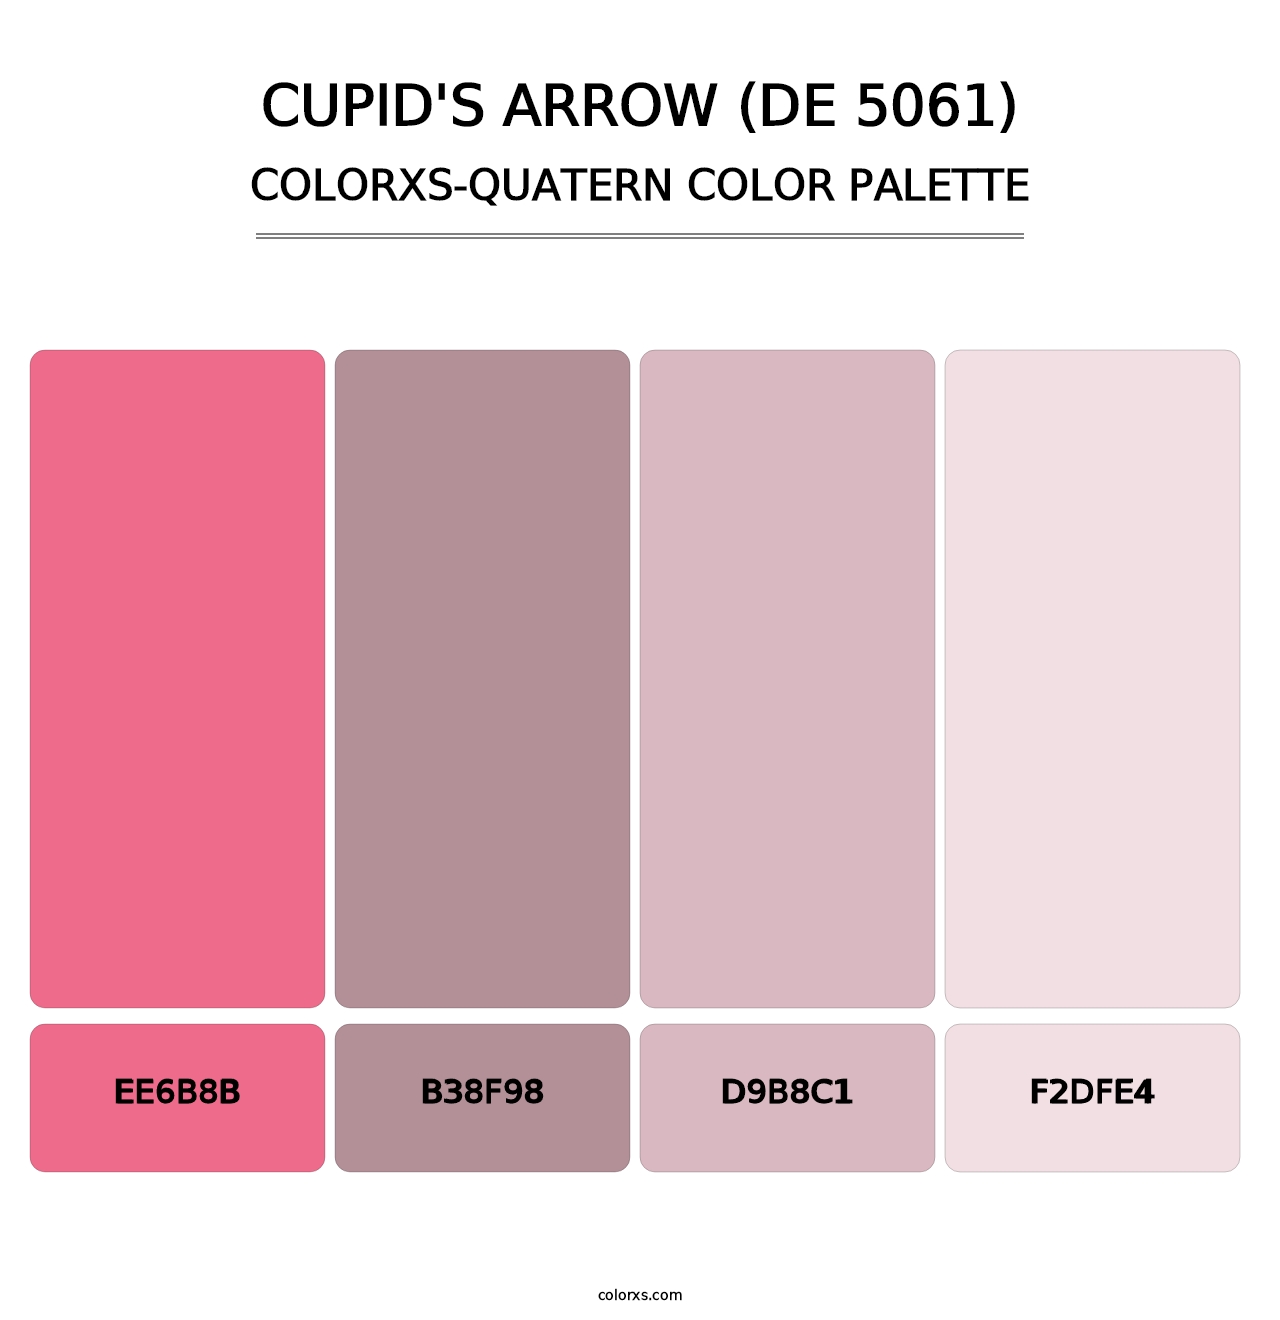 Cupid's Arrow (DE 5061) - Colorxs Quatern Palette